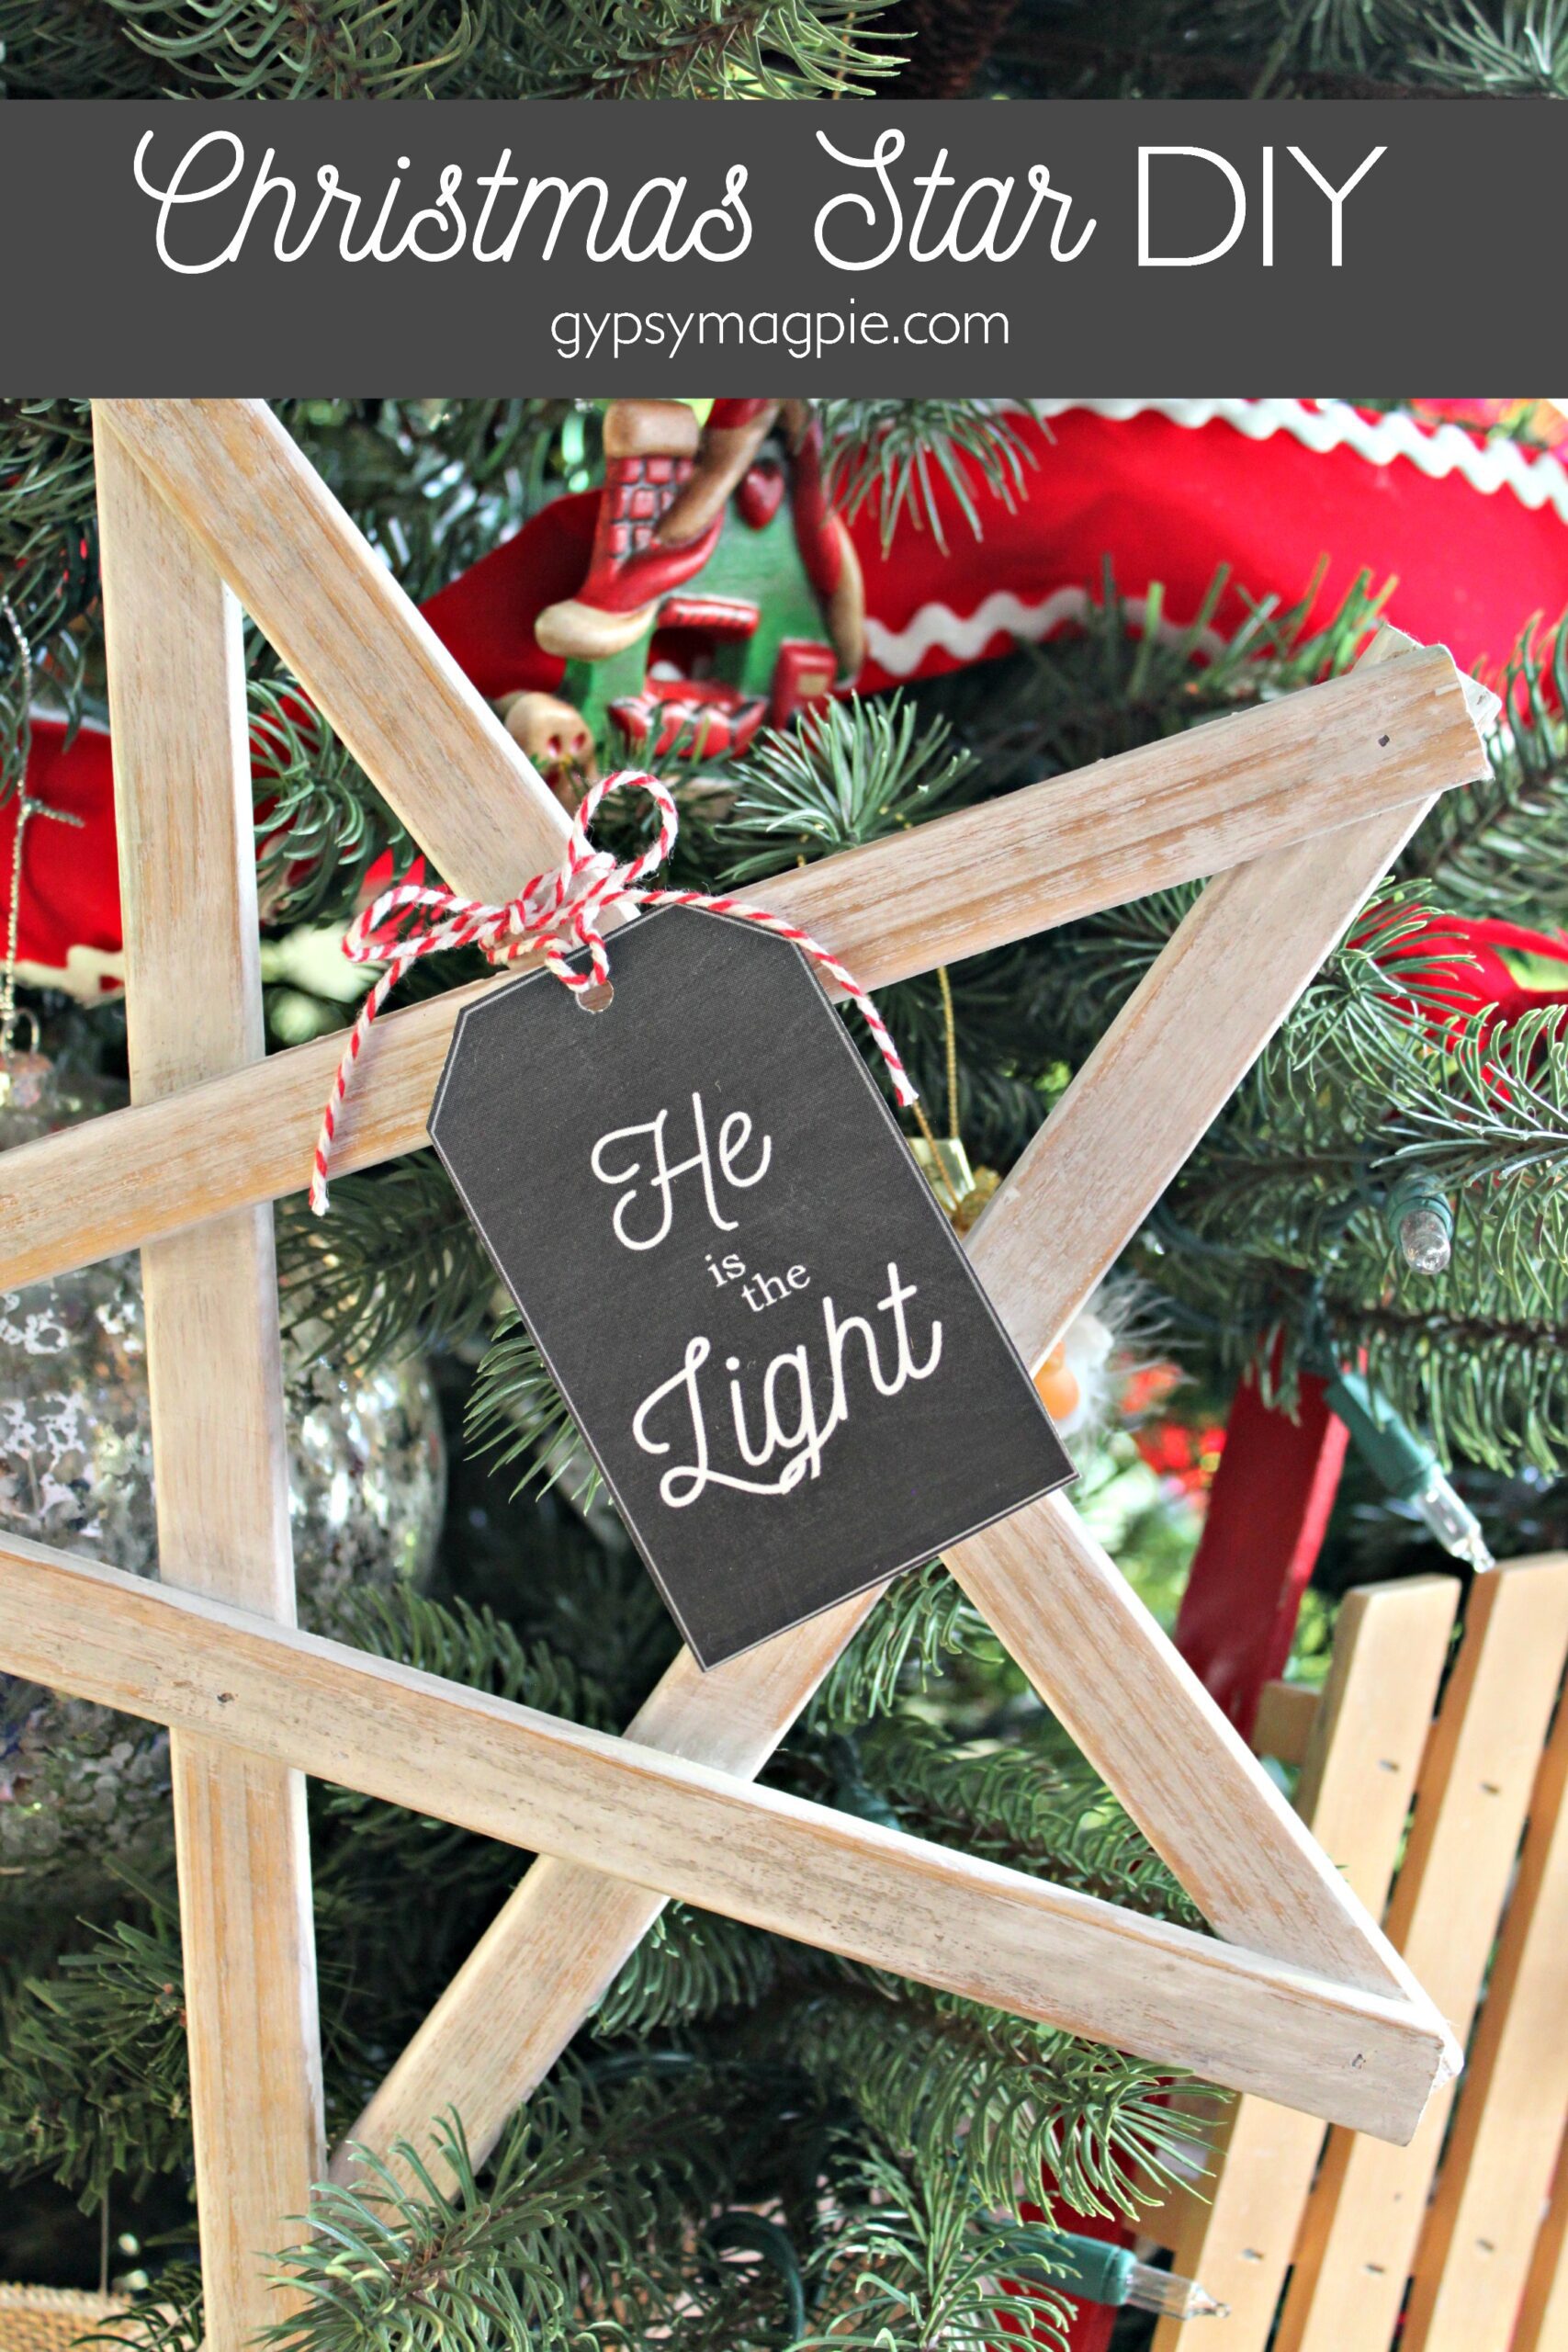 Christmas Star DIY plus Free Printable Gift Tag to Light the World this Christmas!